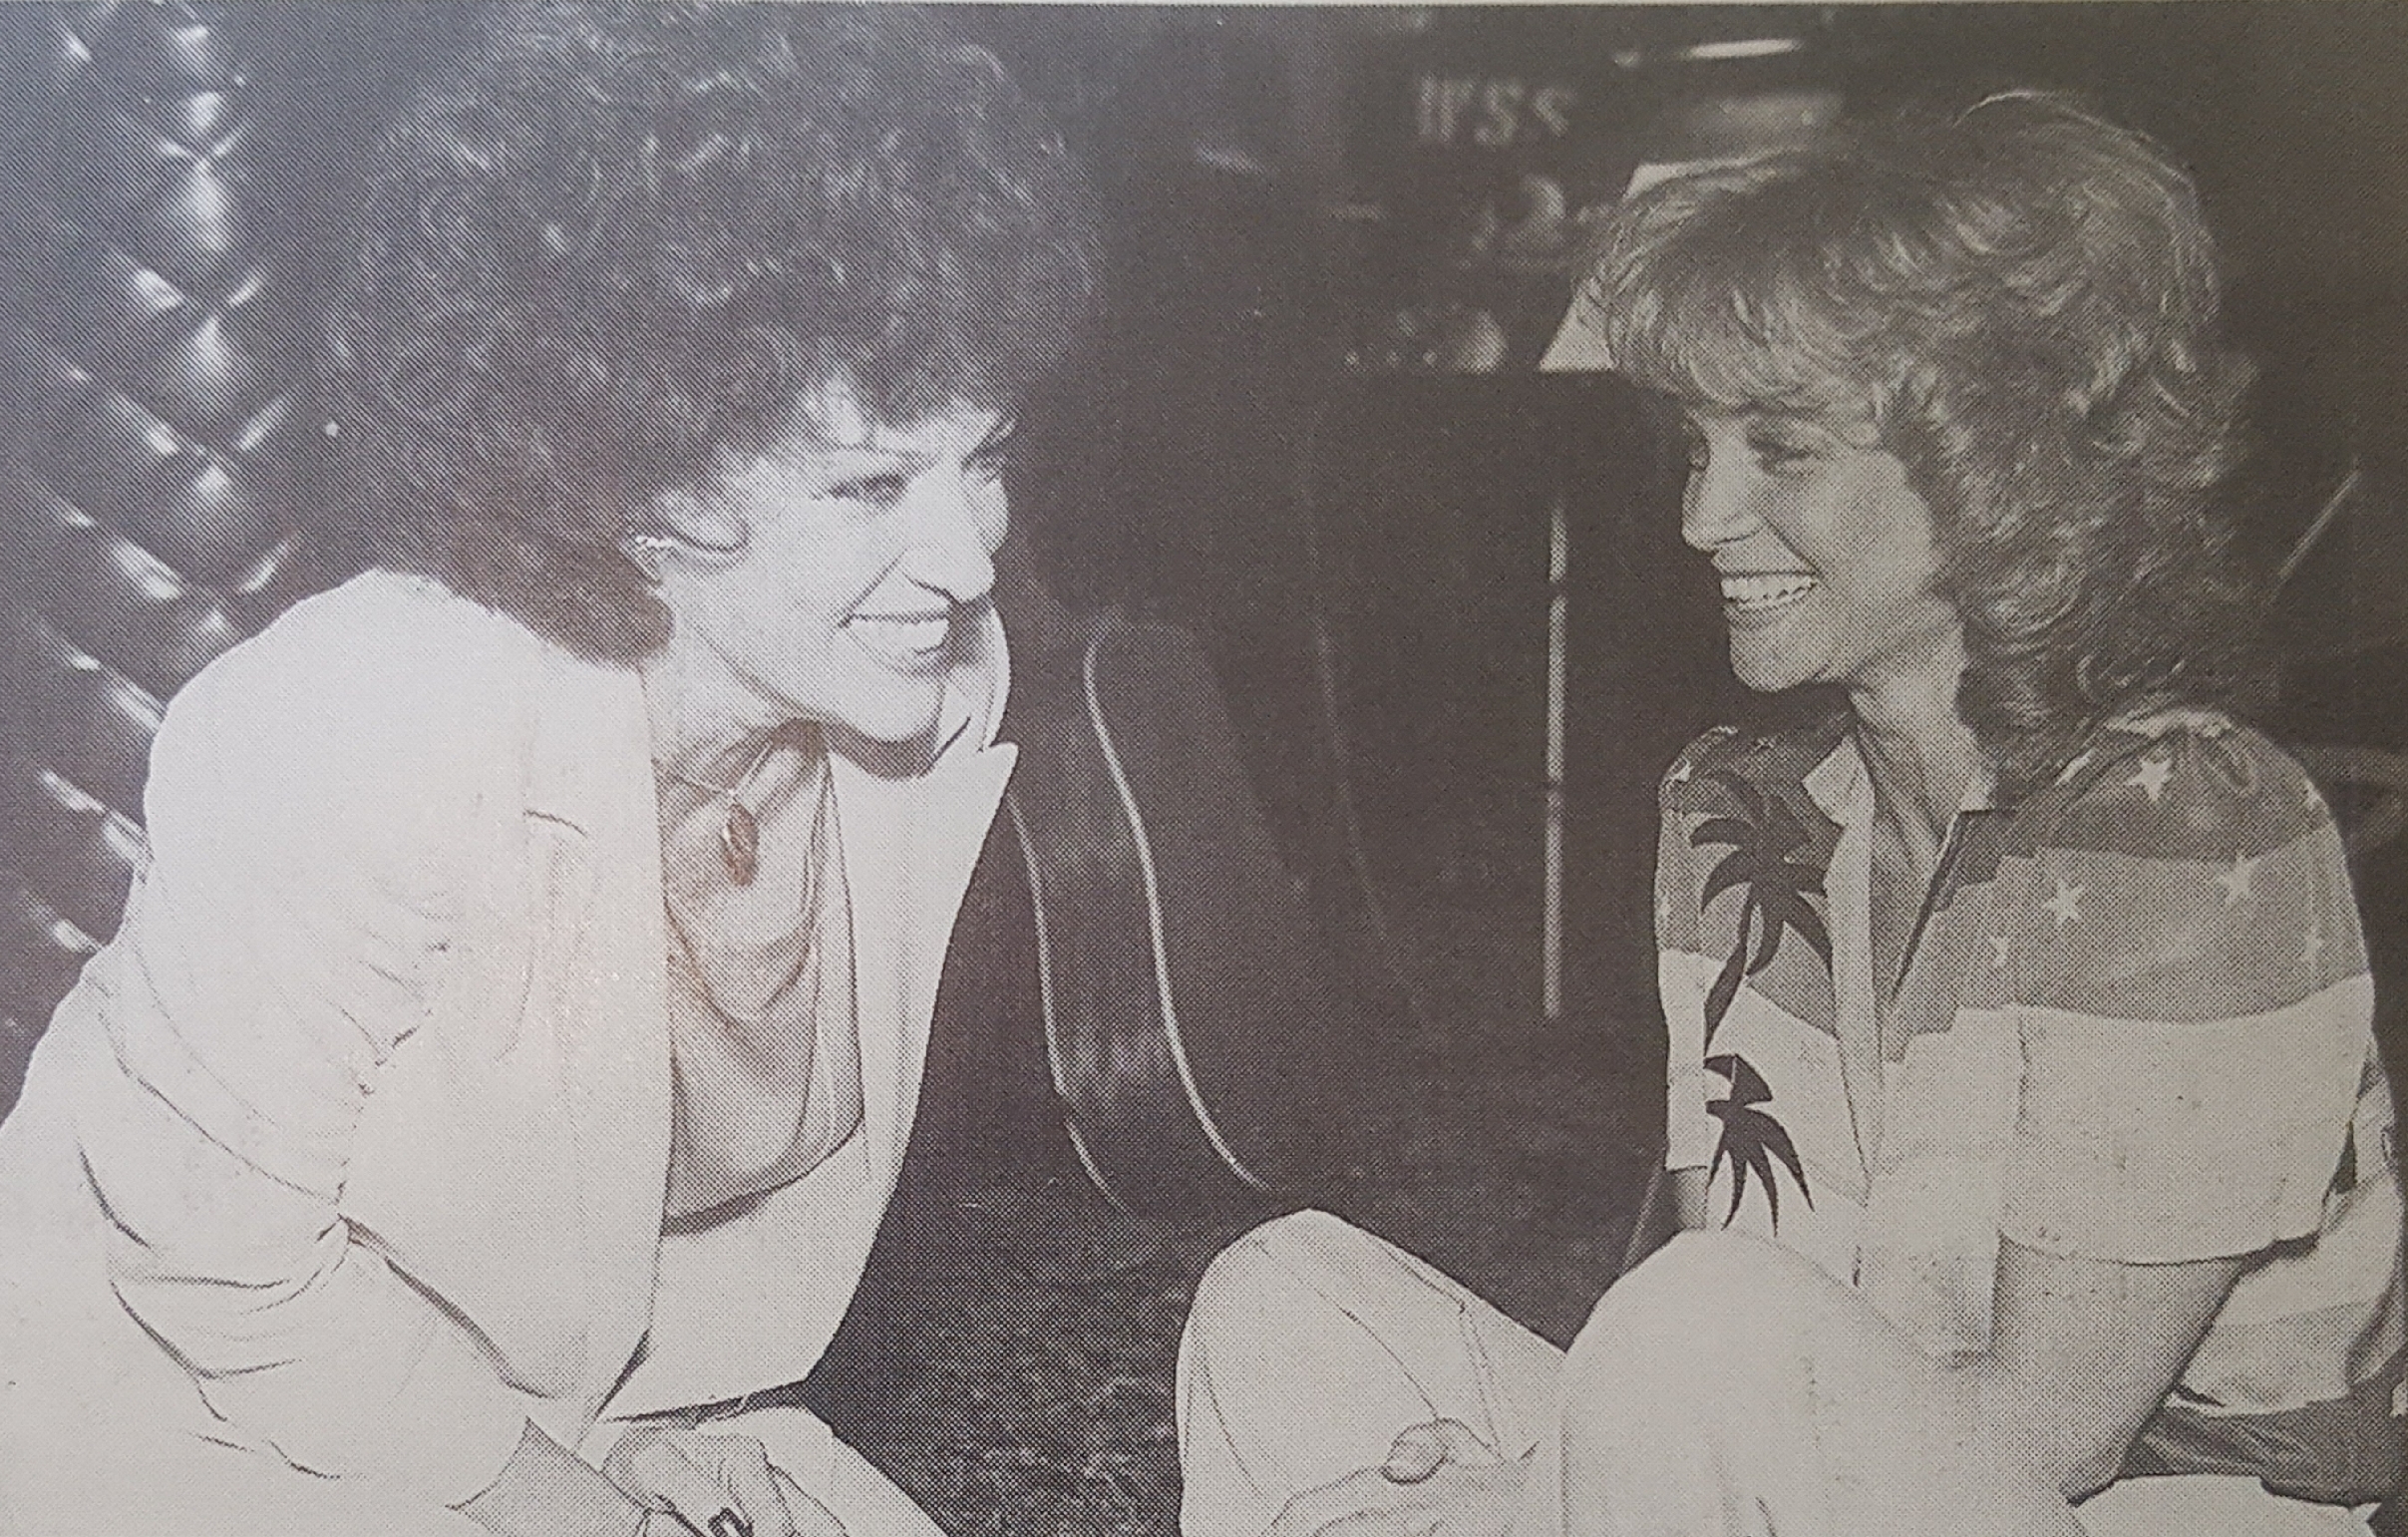  Dottie and Barbara Mandrell 1980s 